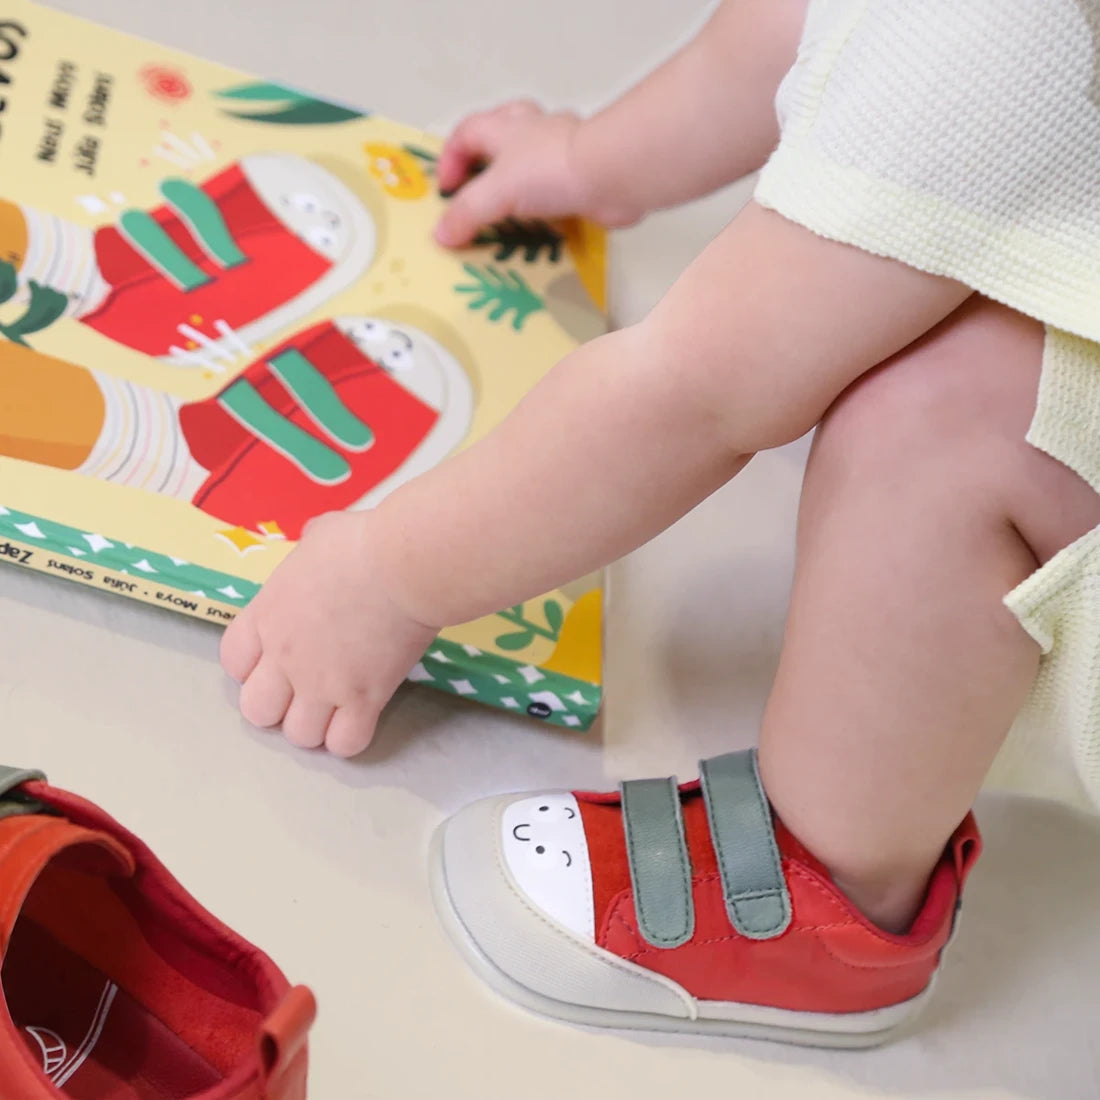 Paterna Feroz AW23 Rojo Piel ,Calzado minimalista para bebés. Neus Moya y su libro Zapatos Nuevos convertido en zapatillas.